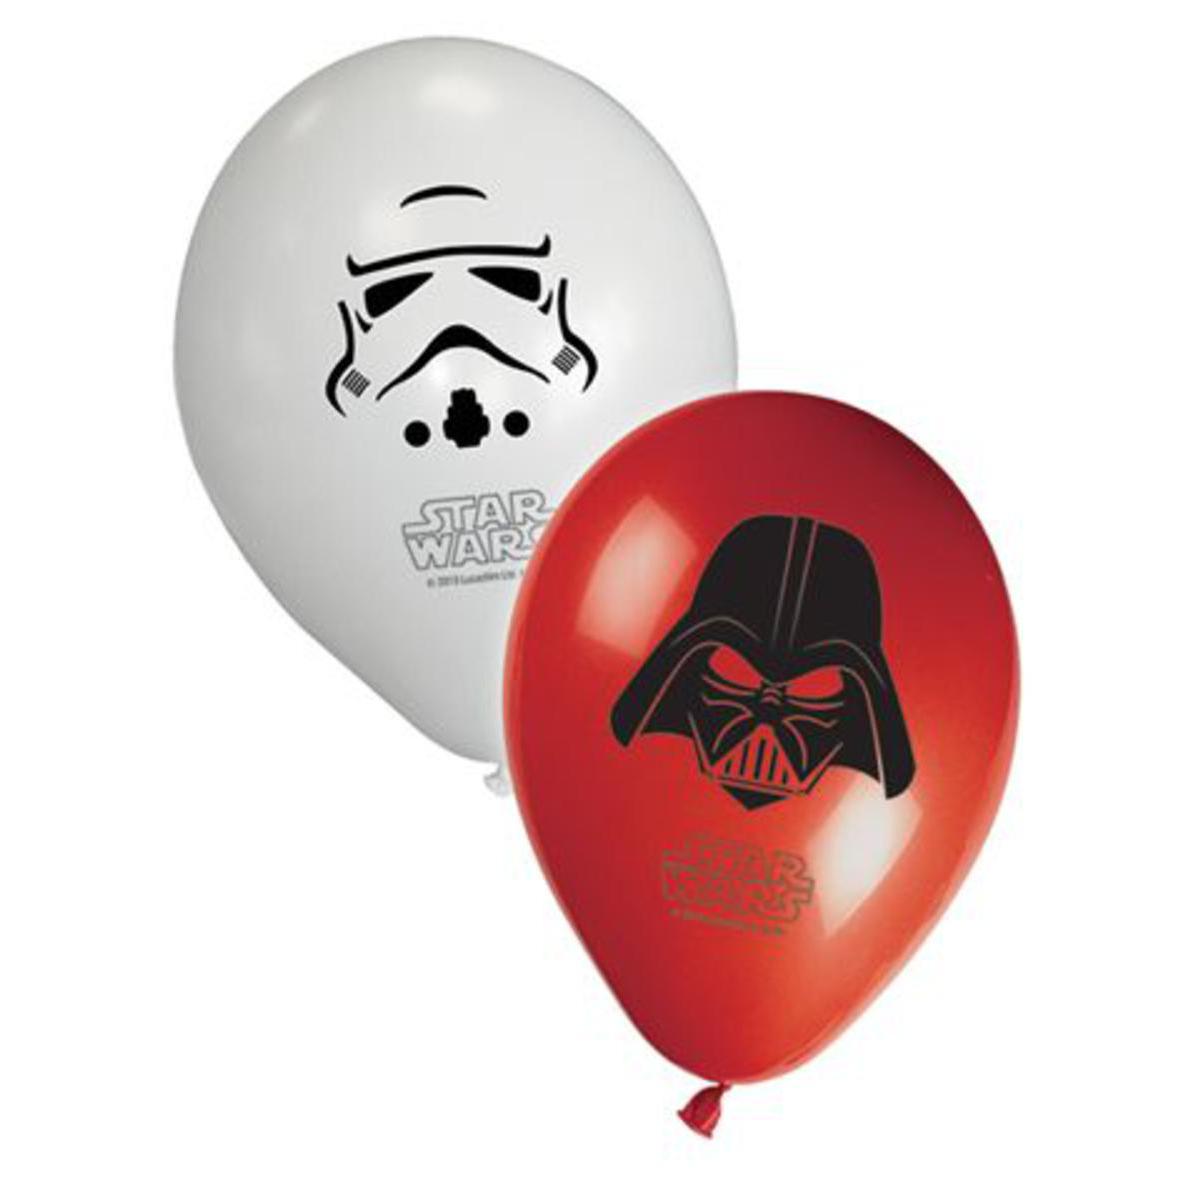 8 ballons Star Wars - Latex - Ø 30 cm - Multicolore